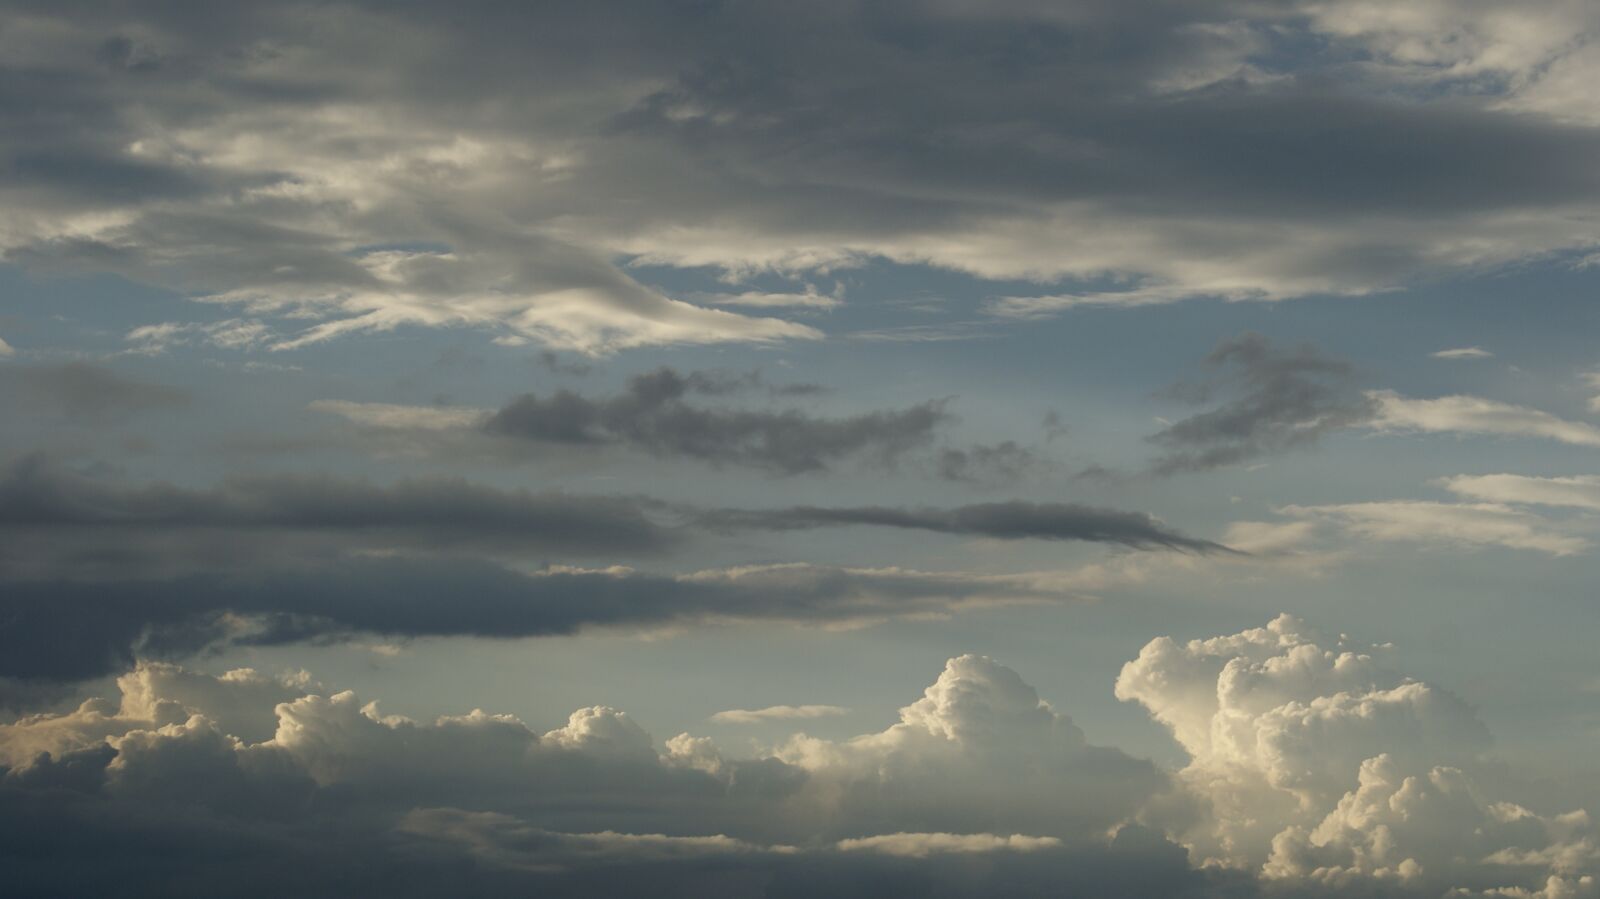 Sony Alpha DSLR-A230 sample photo. Clouds, landscape, sky photography